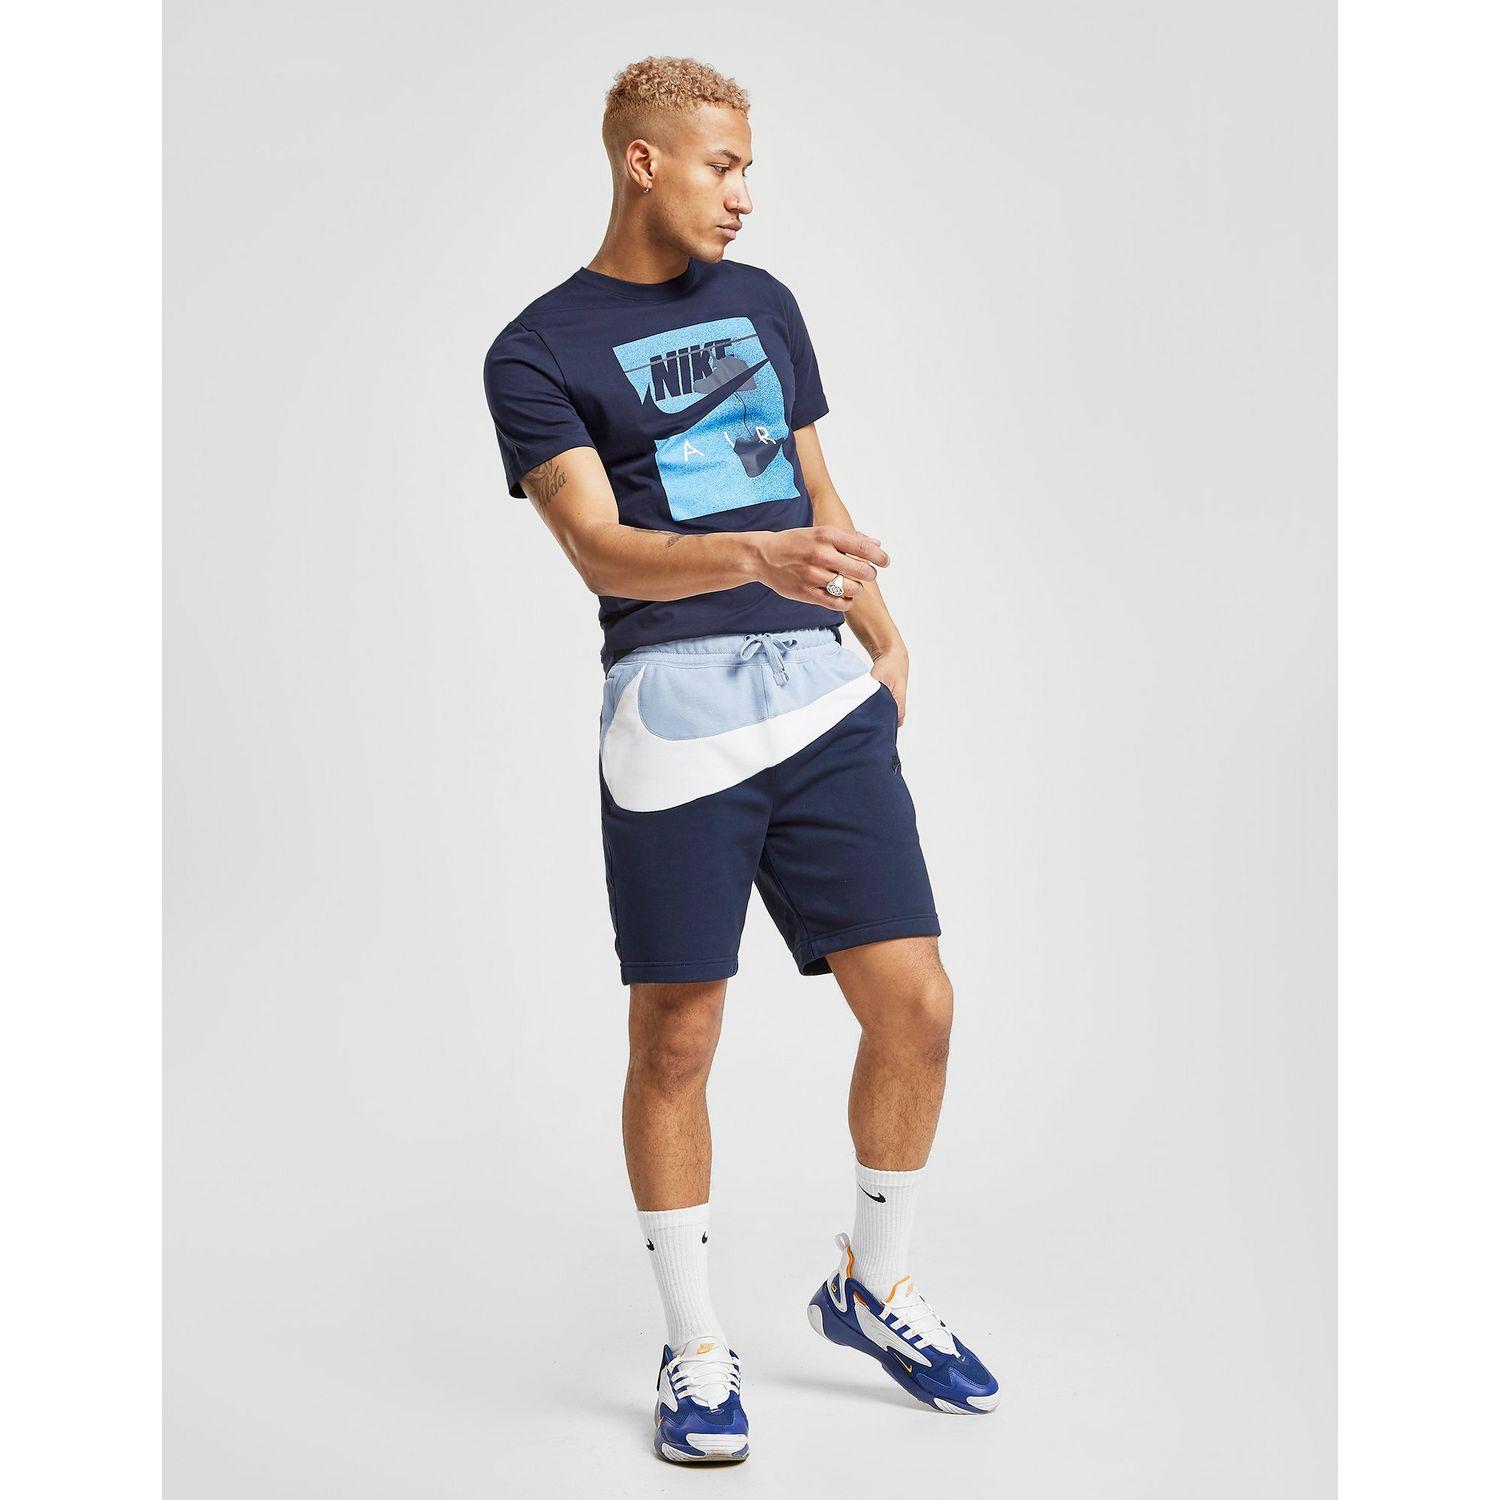 Nike Swoosh Fleece Shorts in Navy/Light/Blue/White (Blue) for Men - Lyst